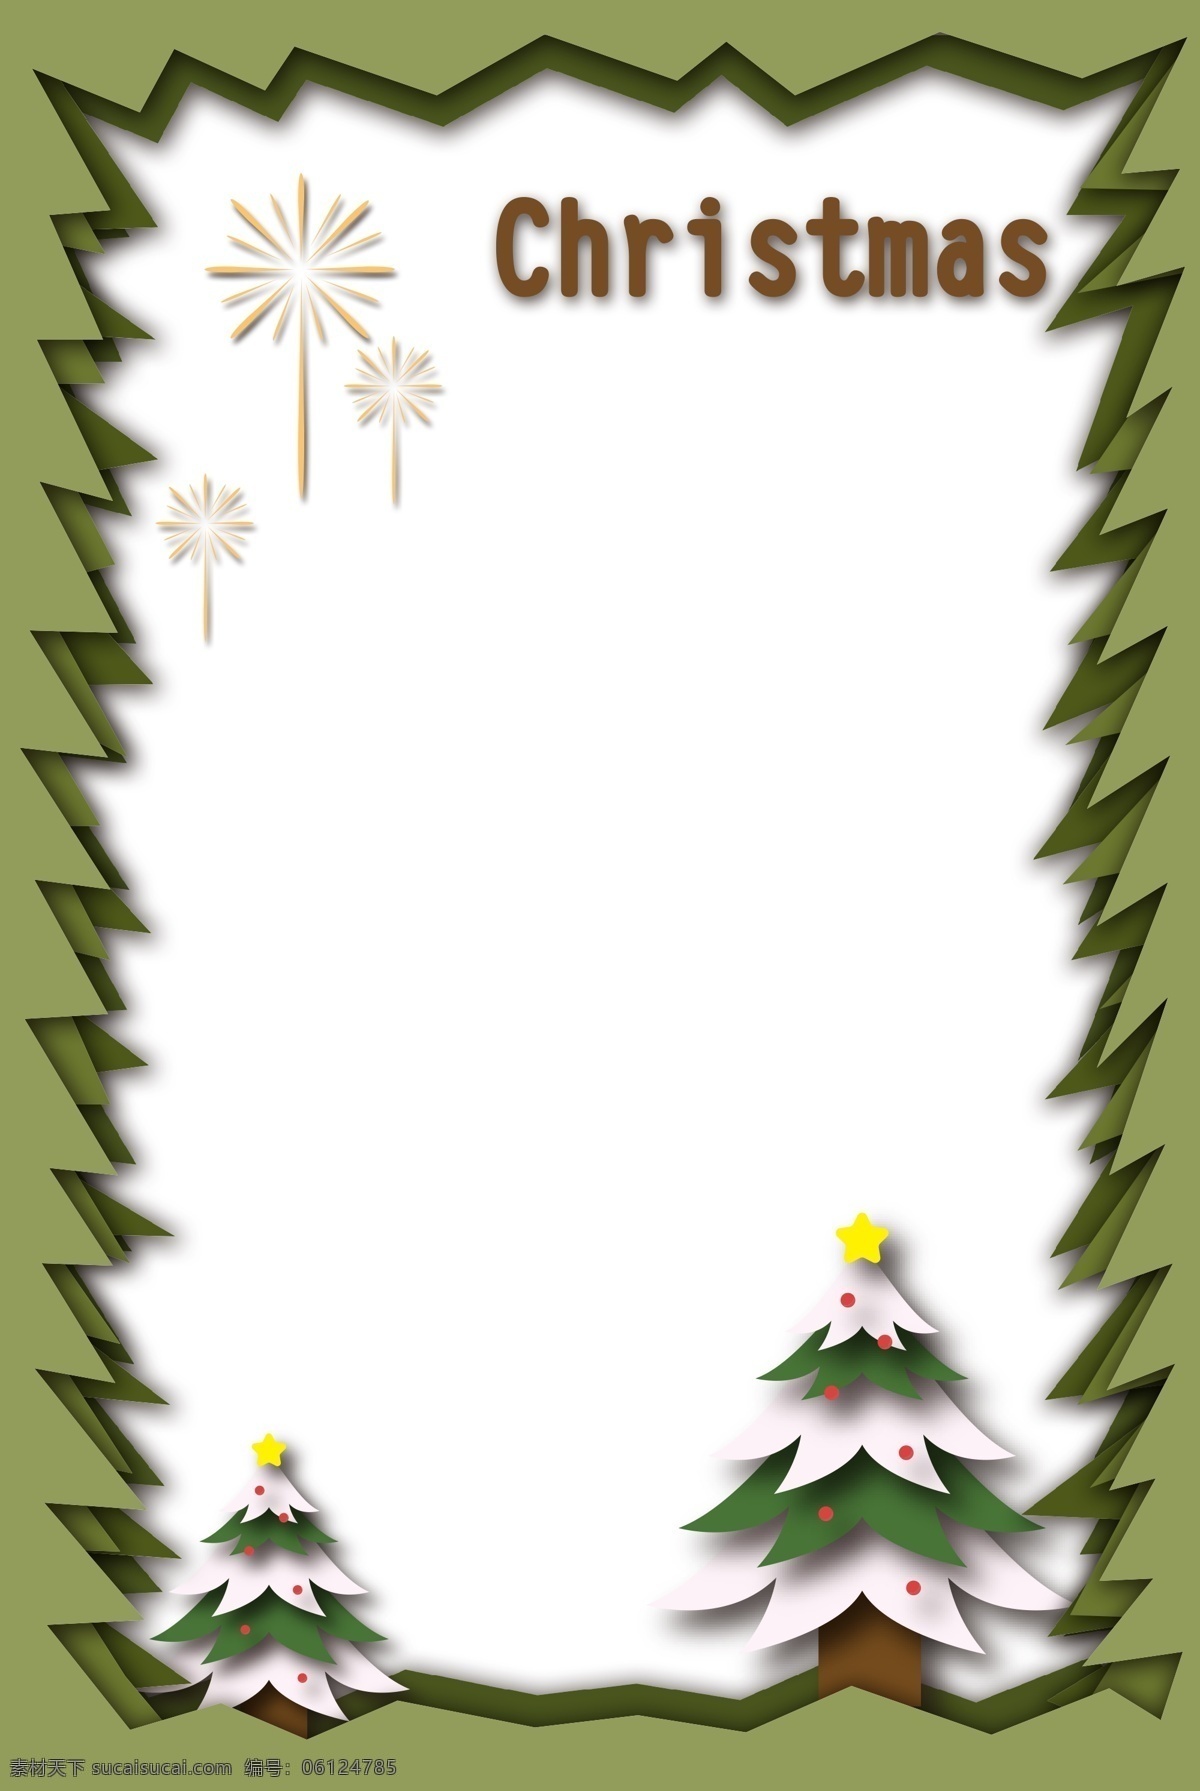 圣诞节 圣诞树 边框 黄色的烟花 漂亮的边框 手绘边框 可爱的边框 手绘 绿色的圣诞树